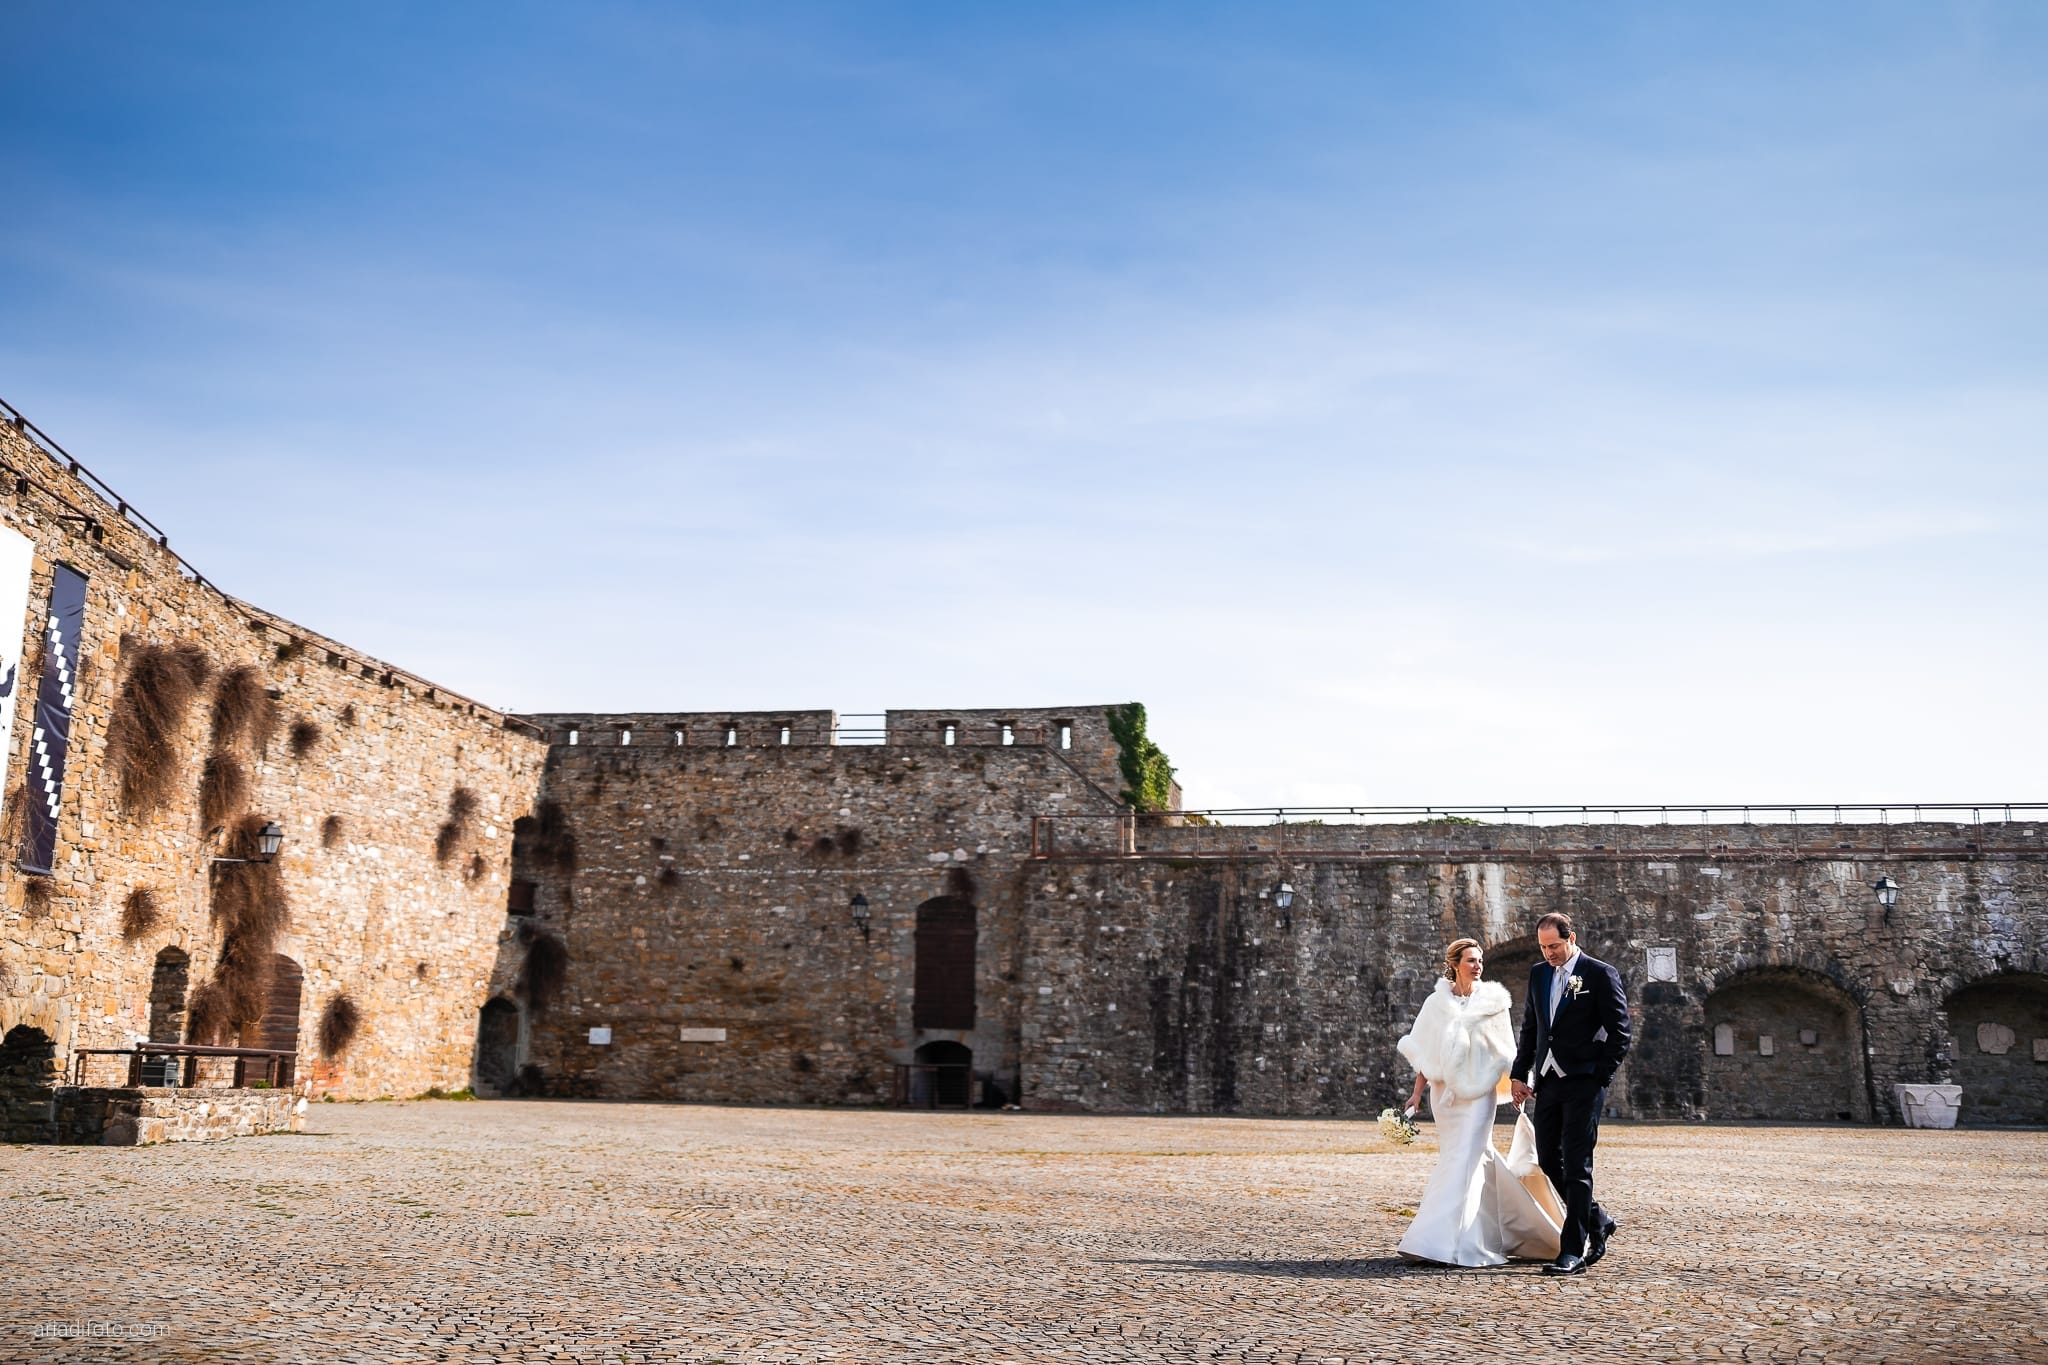 Elena Guido Matrimonio elegante Savoia Excelsior Palace Trieste ritratti sposi Castello San Giusto camminano mano per mano